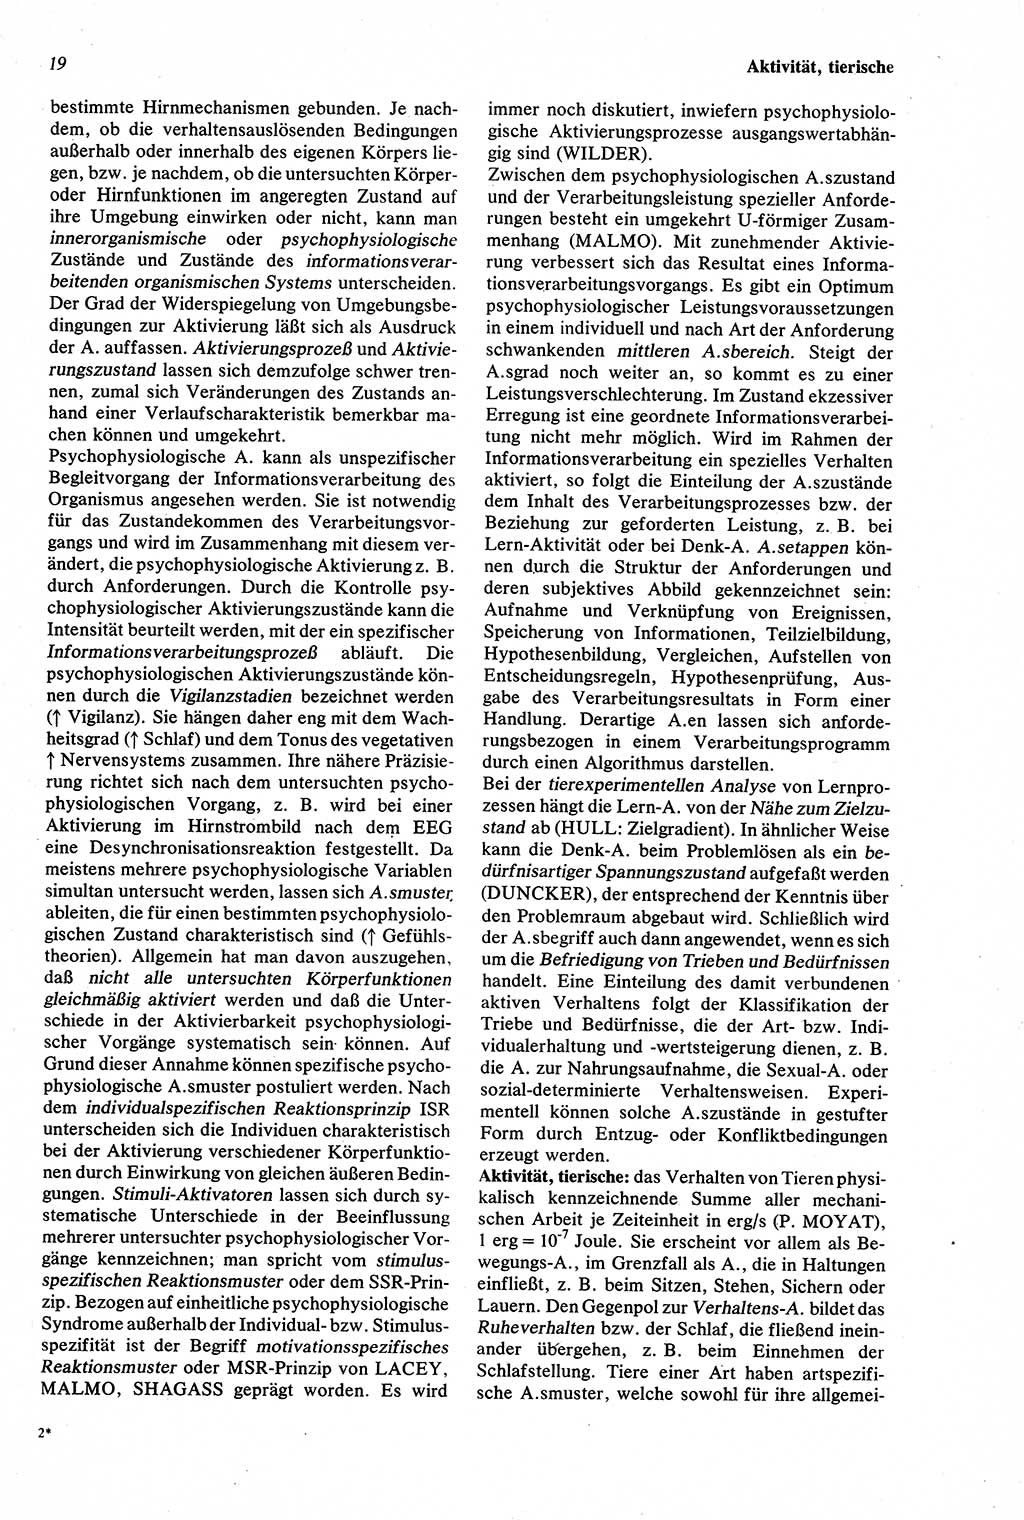 Wörterbuch der Psychologie [Deutsche Demokratische Republik (DDR)] 1976, Seite 19 (Wb. Psych. DDR 1976, S. 19)